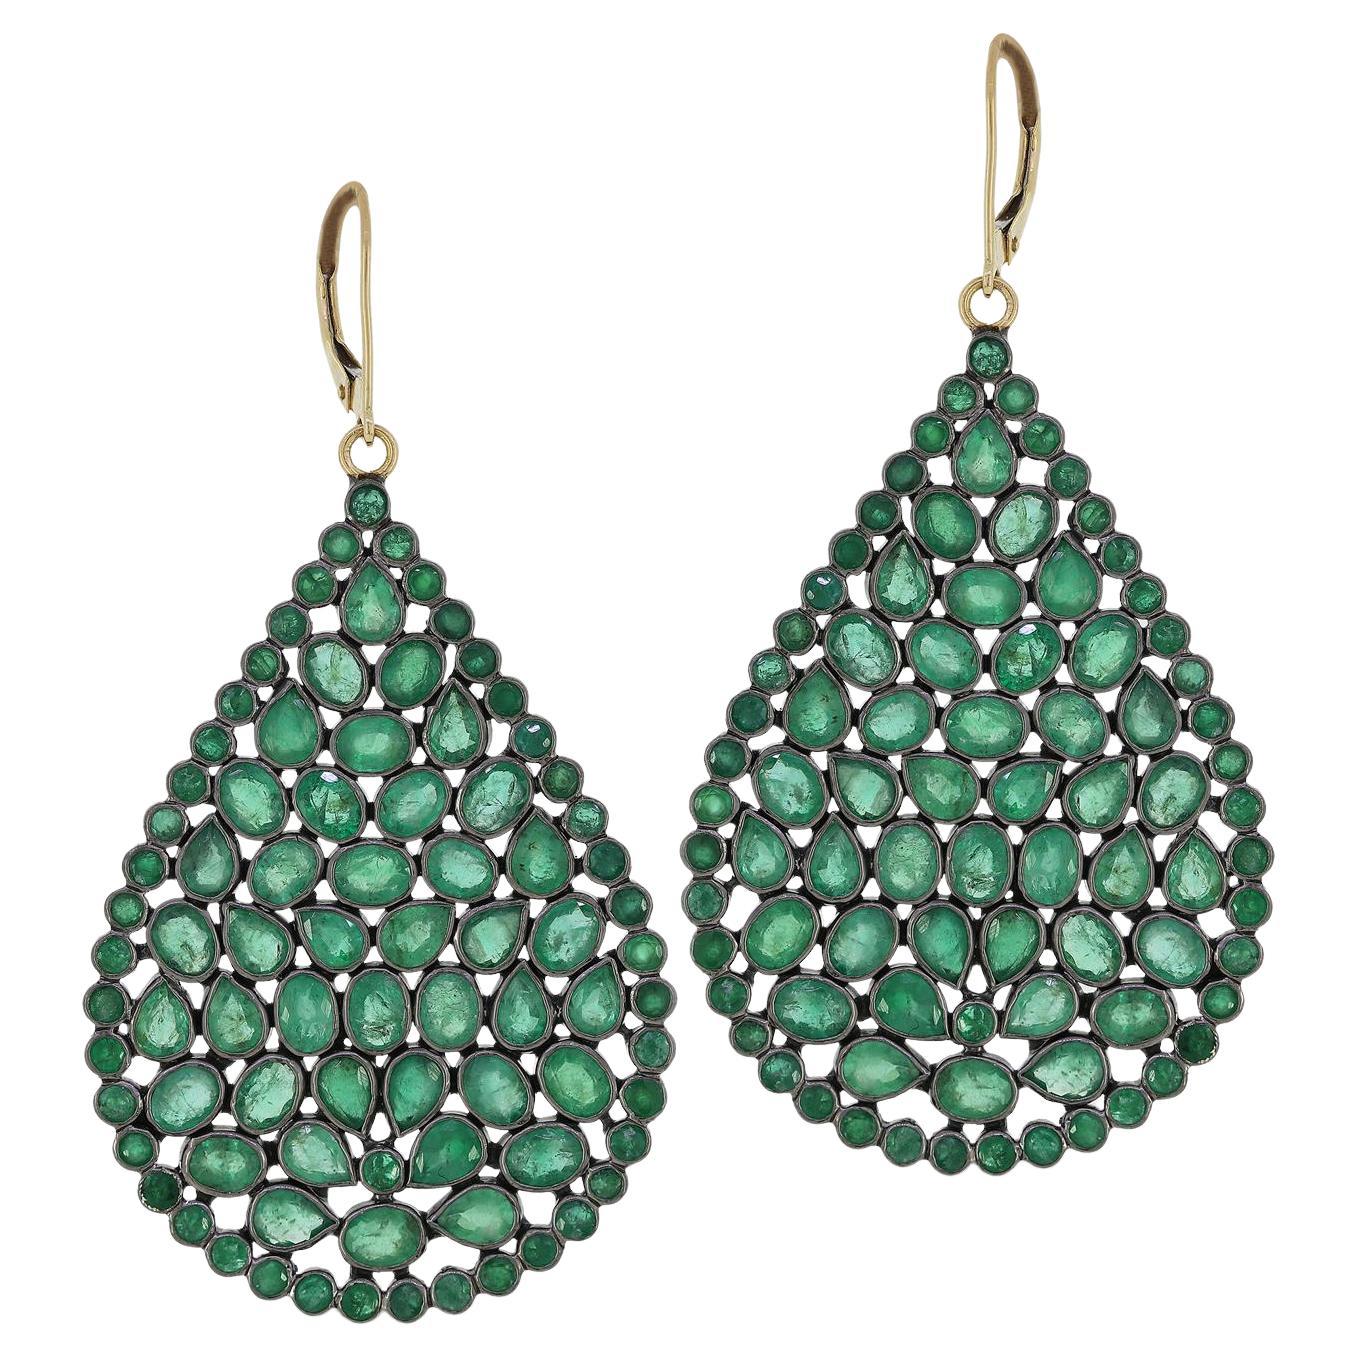 Gemistry 16cts Emerald Victorian Pear Drop Earrings in 18k/14k Sterling Silver